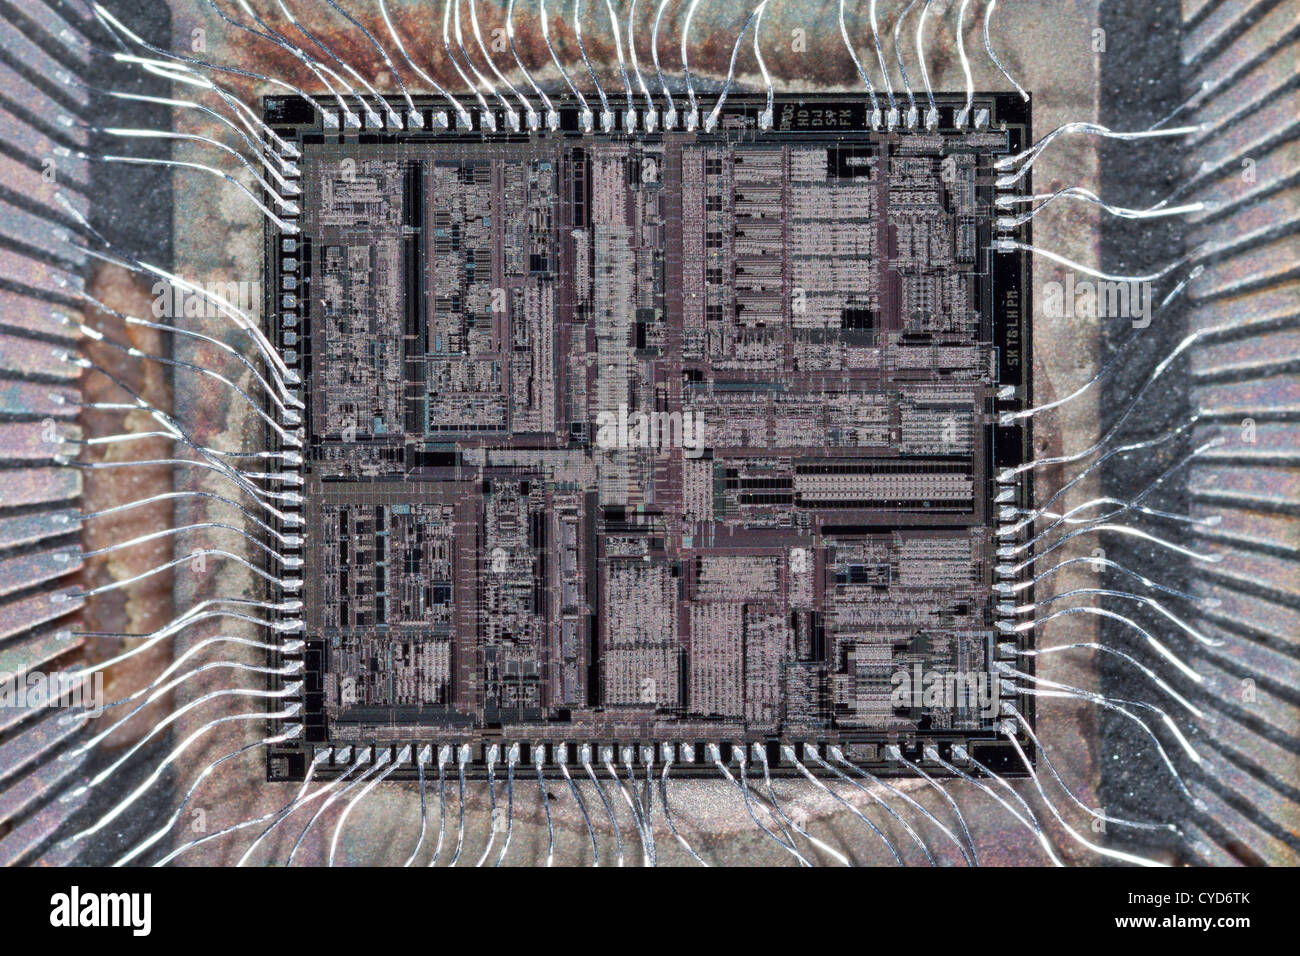 Circuito integrado de un microchip de memoria EPROM mostrando los bloques de memoria, circuitos de apoyo, conectar los hilos de plata fina Foto de stock